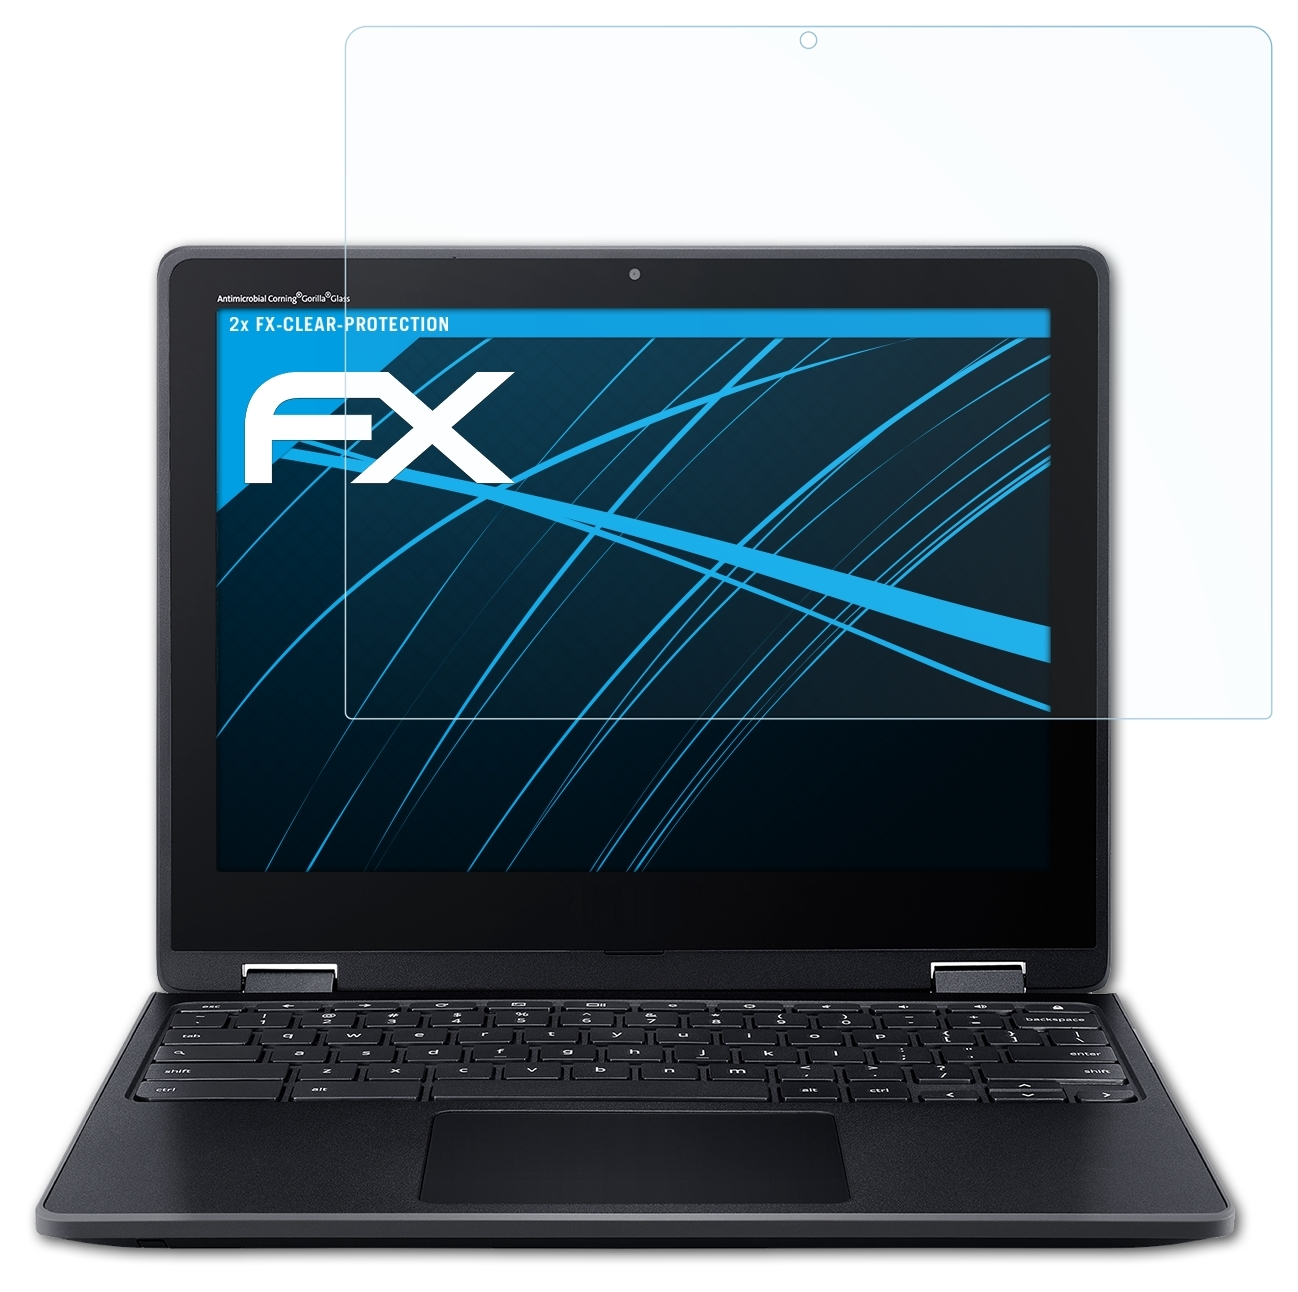 ATFOLIX 2x FX-Clear Spin Acer Chromebook 512) Displayschutz(für